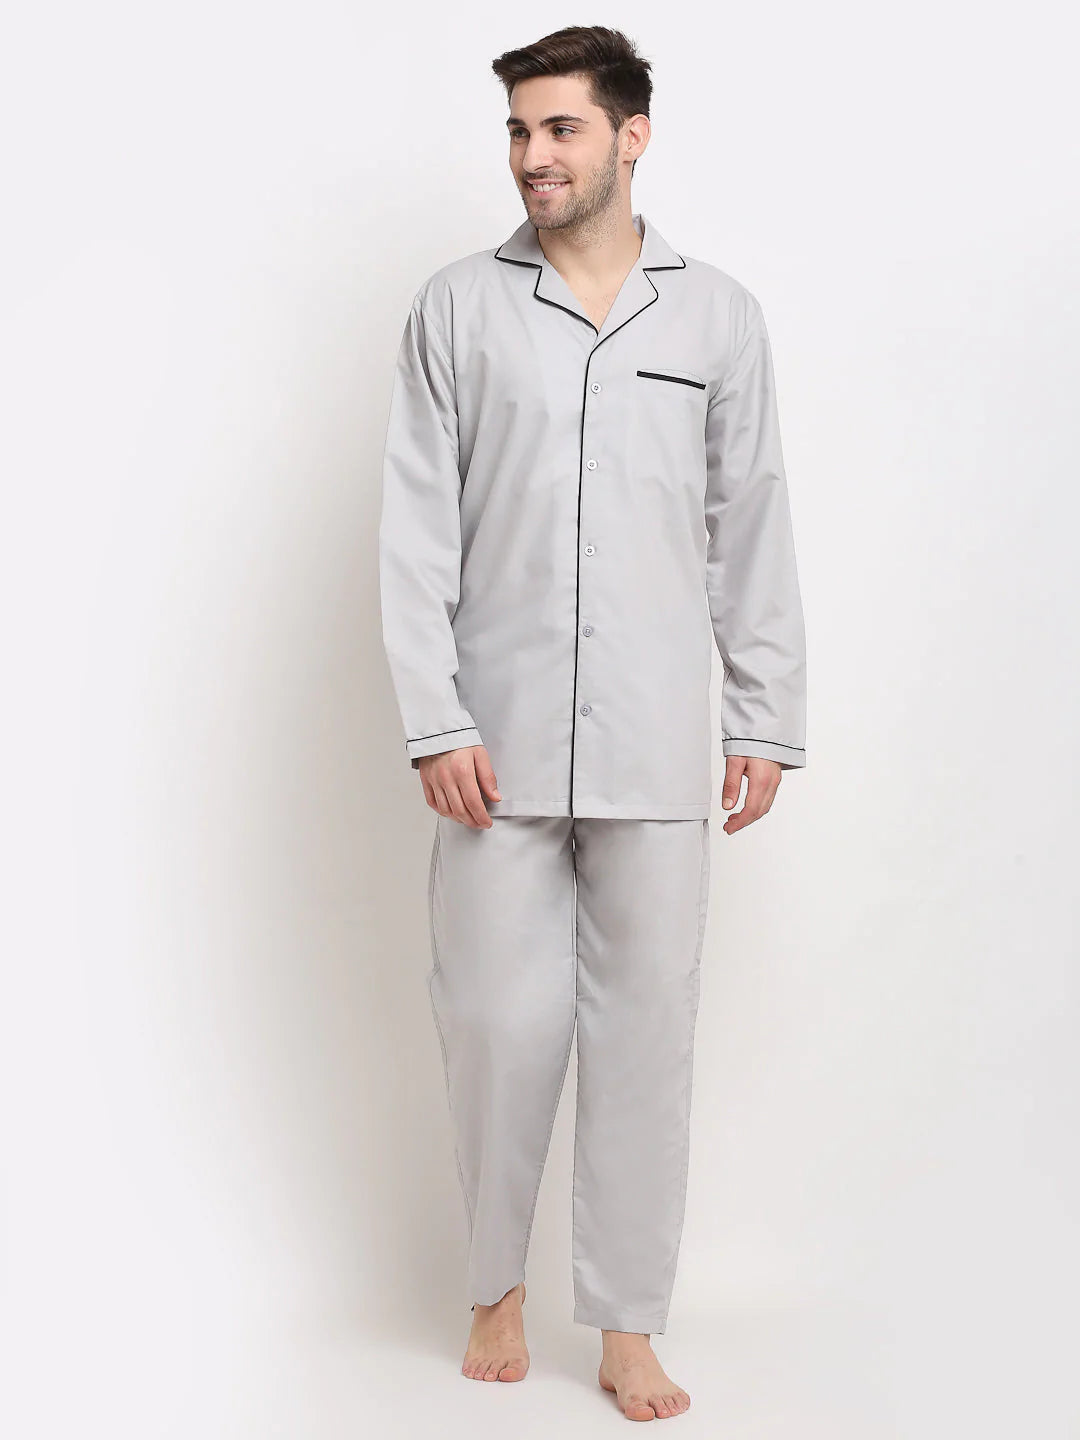 Jainish Men's Steel-Grey Cotton Solid Night Suits ( GNS 003Steel-Grey )